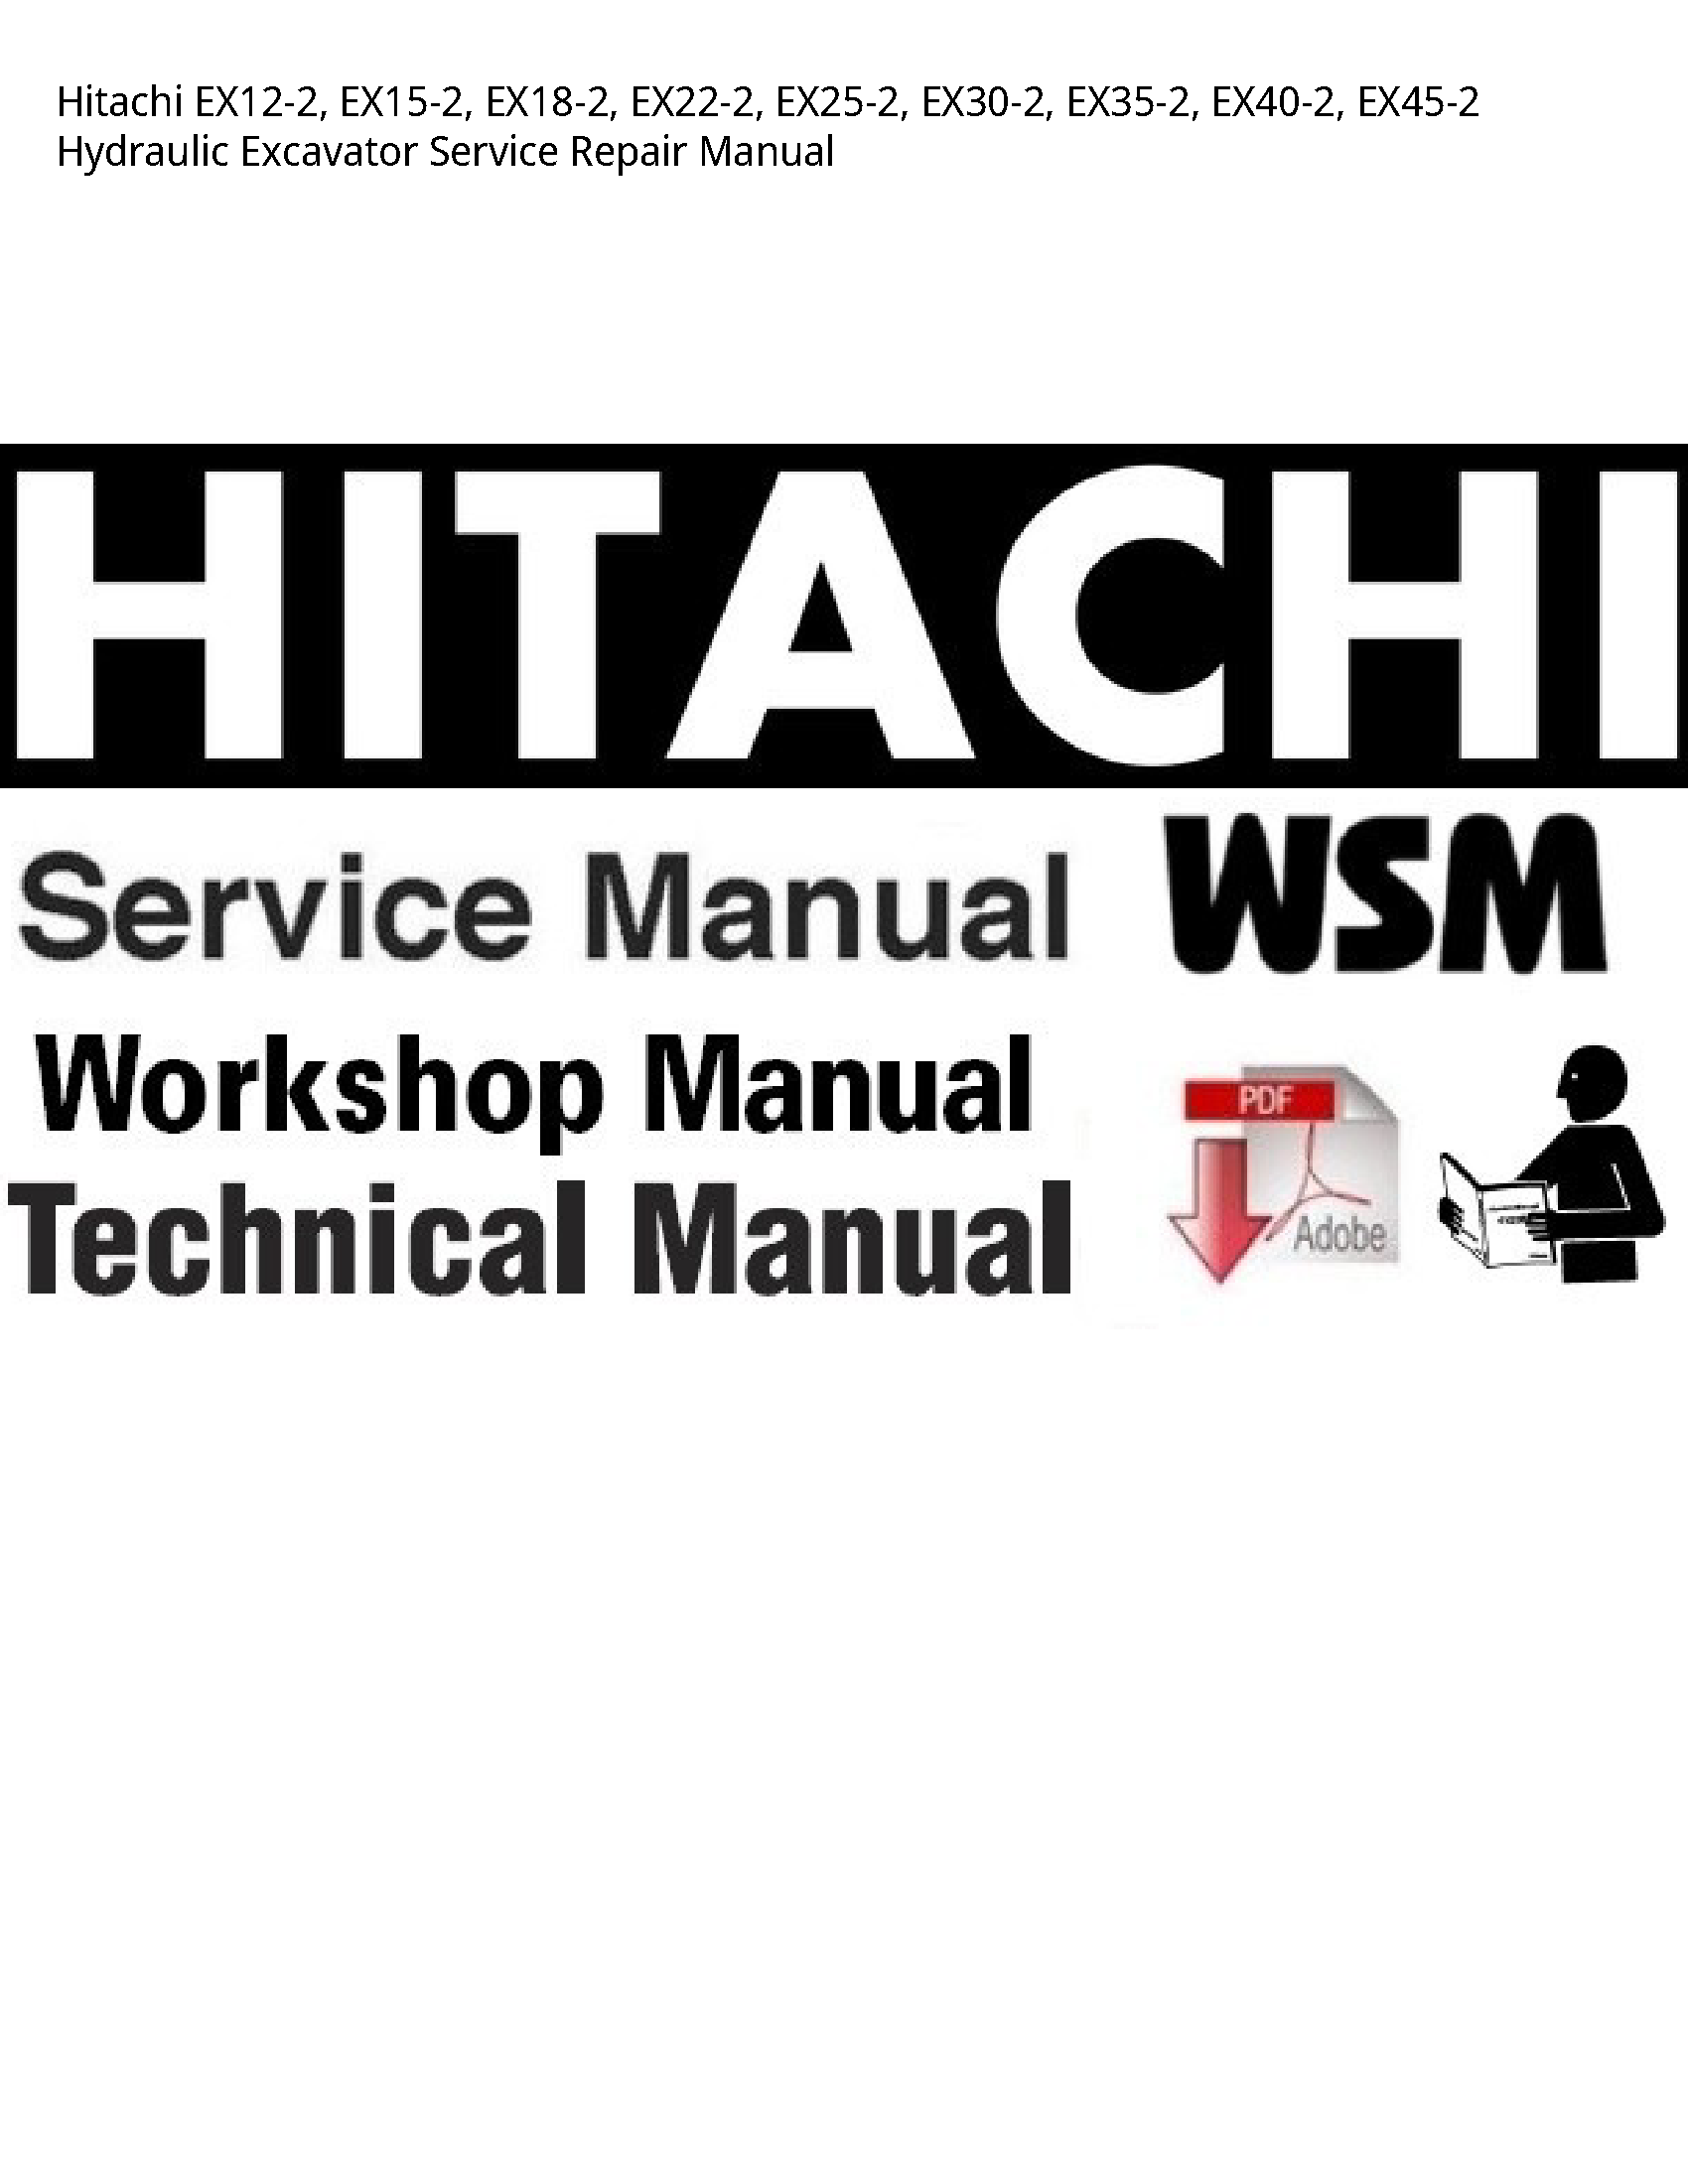 Hitachi EX12-2 Hydraulic Excavator manual